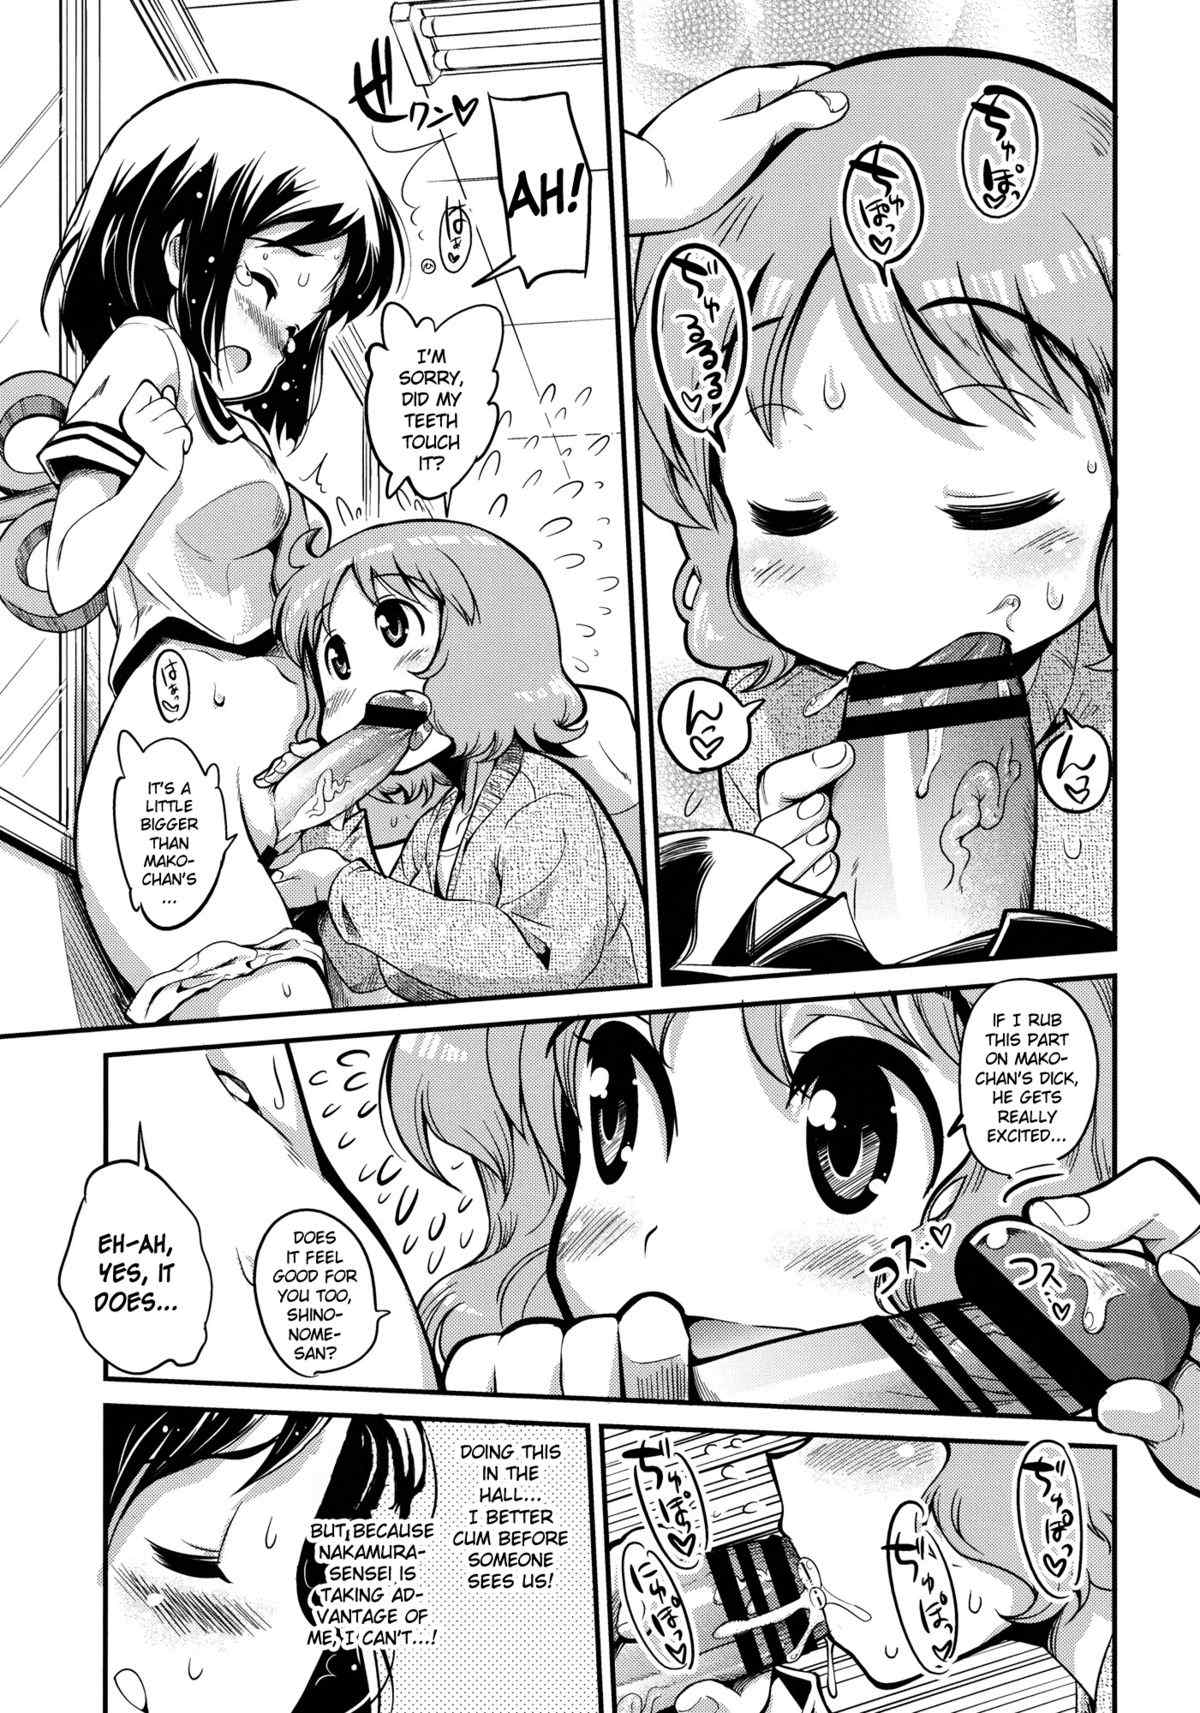 Page 10 | Hinichijou - Nichijou Hentai Doujinshi by Kenrou Koubo - Pururin,  Free Online Hentai Manga and Doujinshi Reader